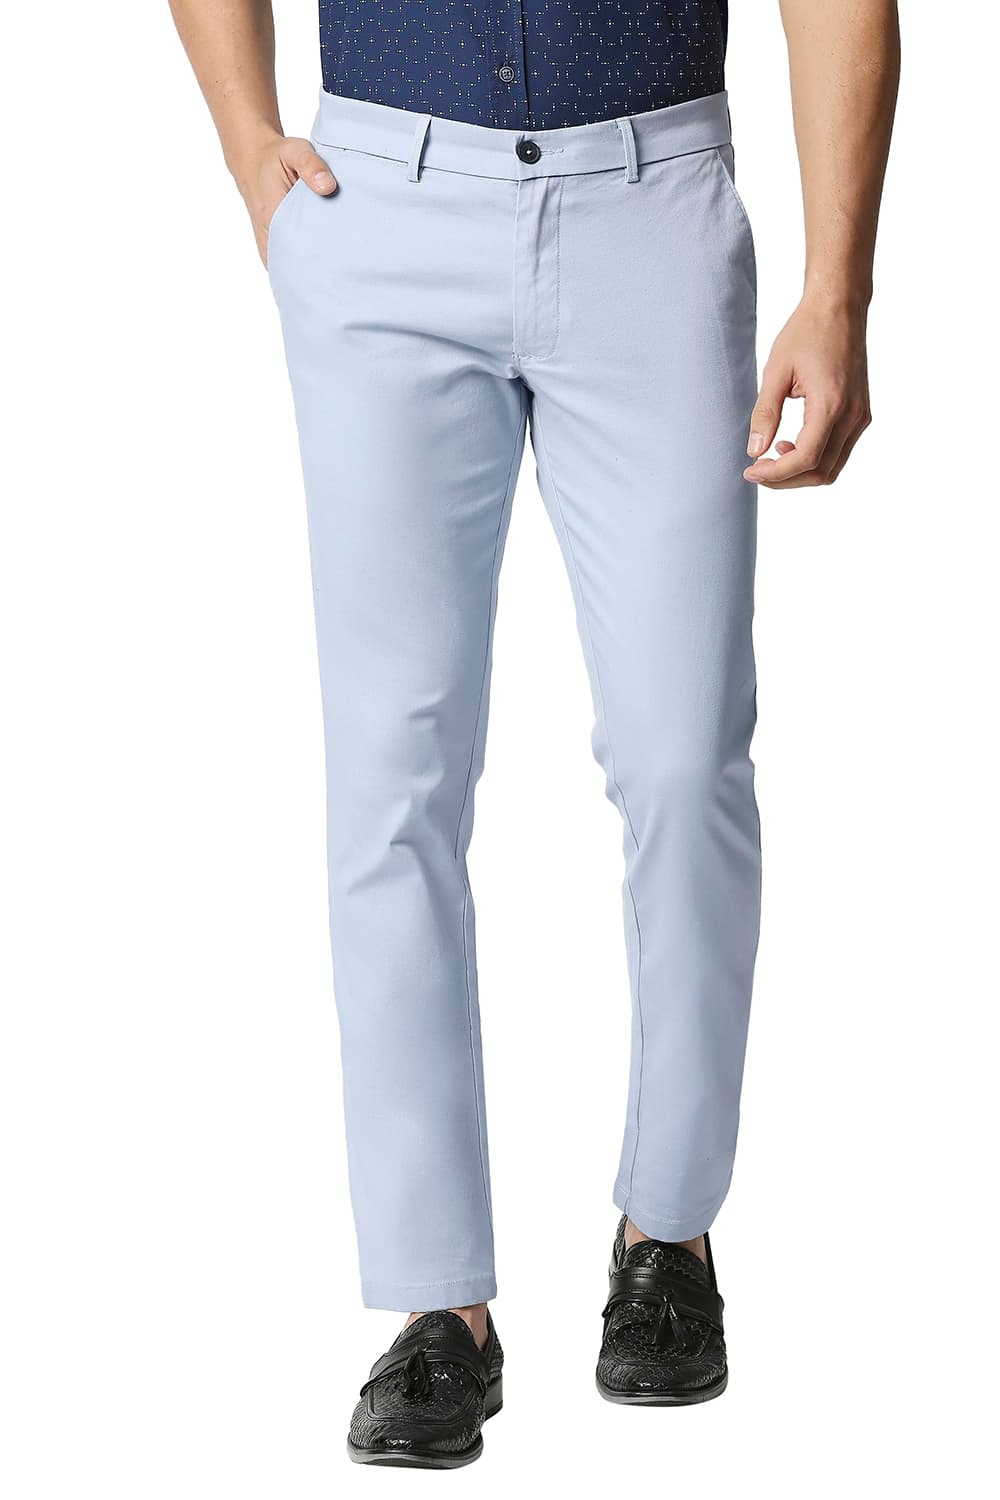 Men's Light Blue Cotton Blend Solid Trouser